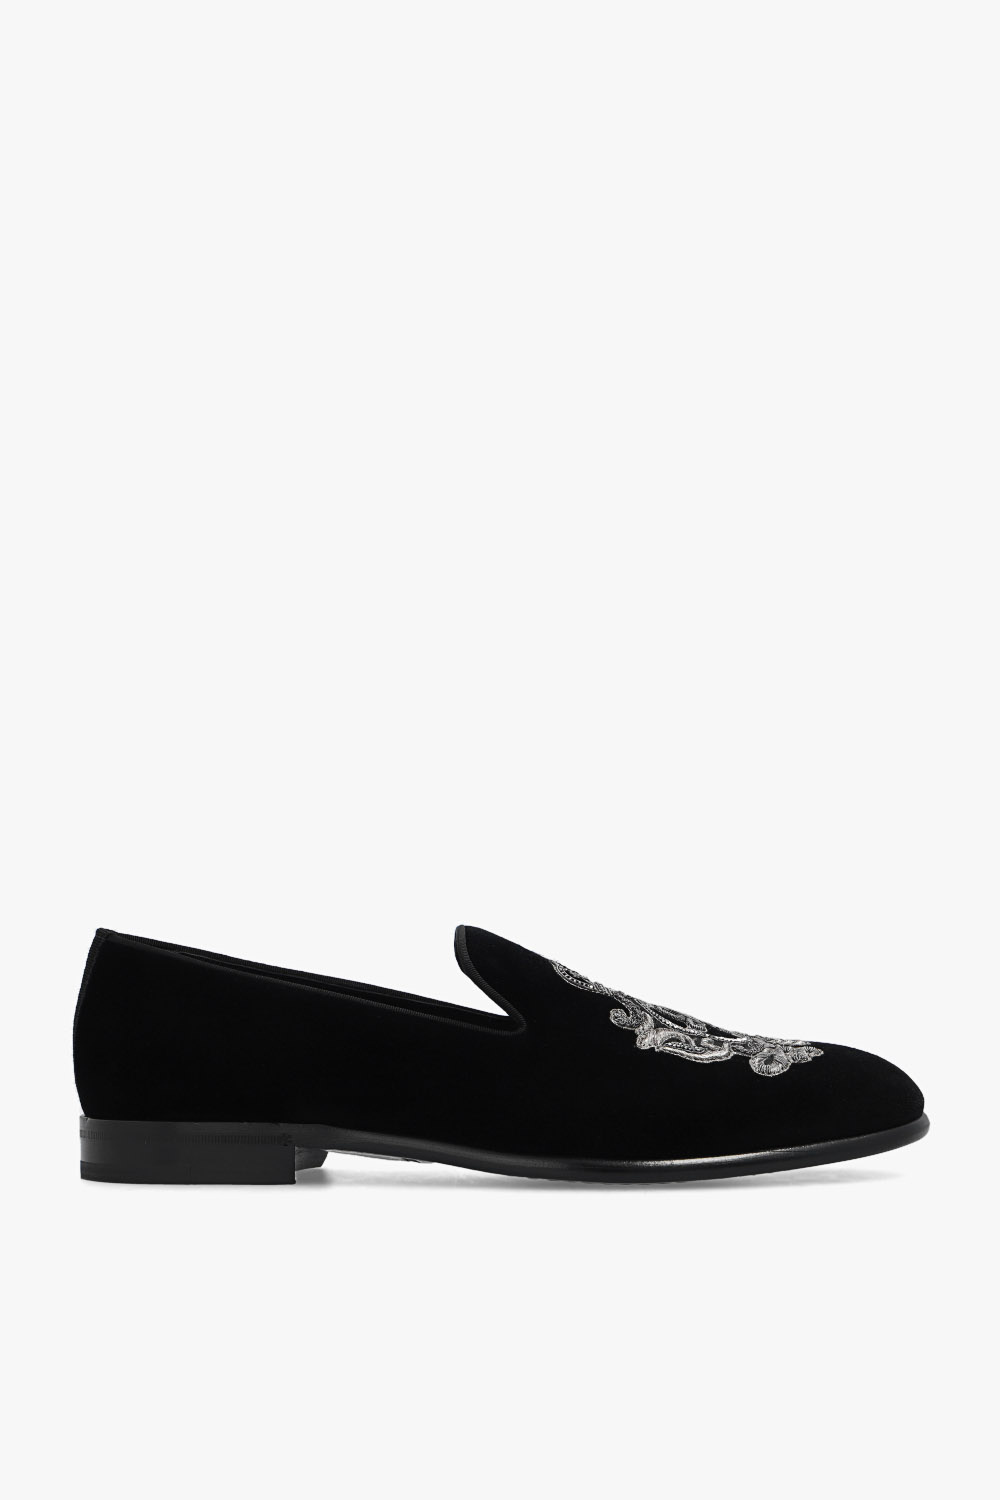 dolce Amore & Gabbana Velvet loafers